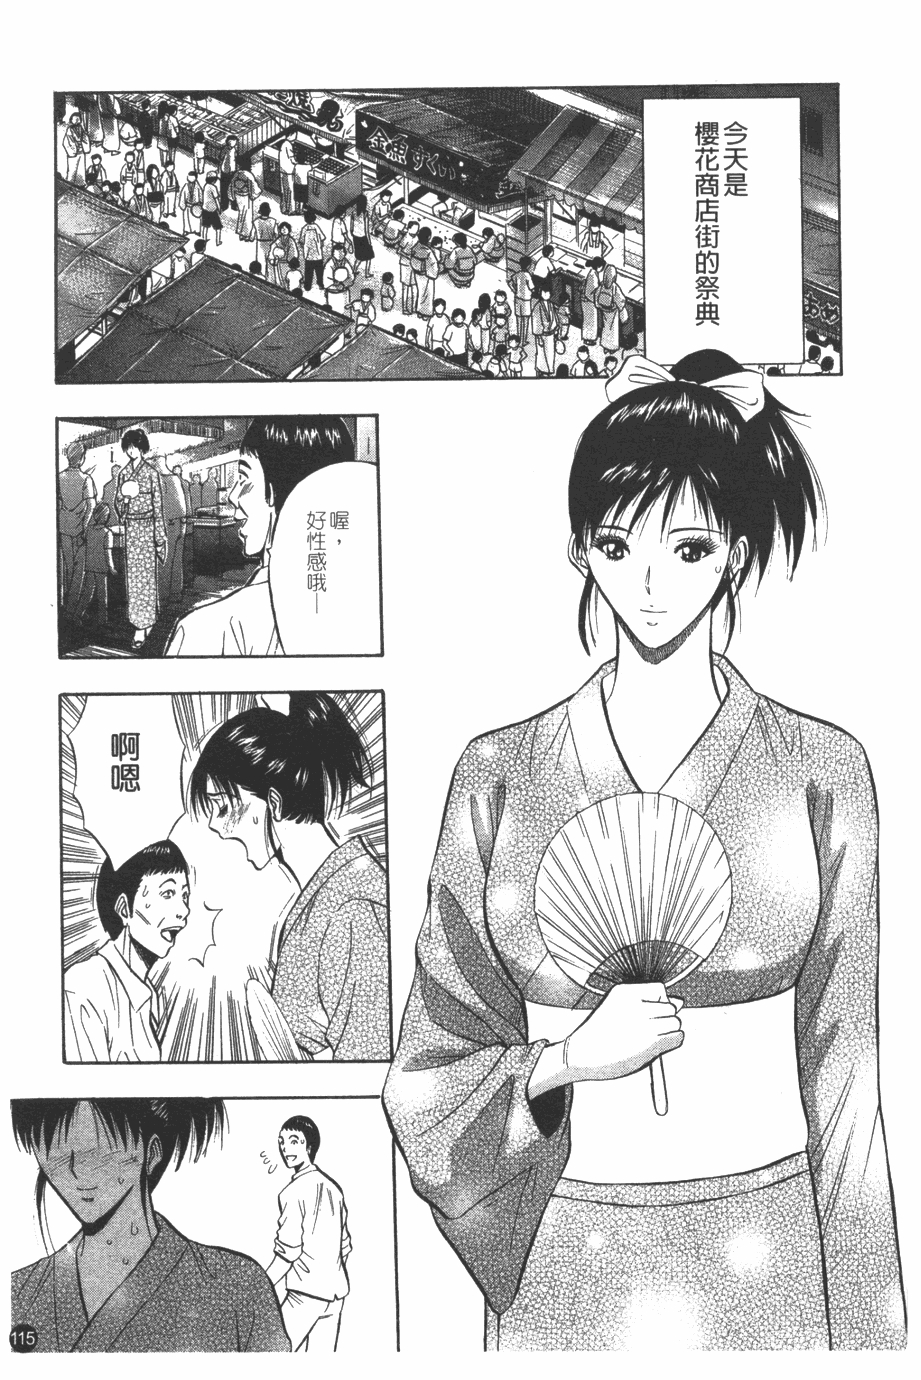 [Nagashima Chosuke] Sakuradoori no Megami - The Venus of SAKURA St. 1 [Chinese] 115